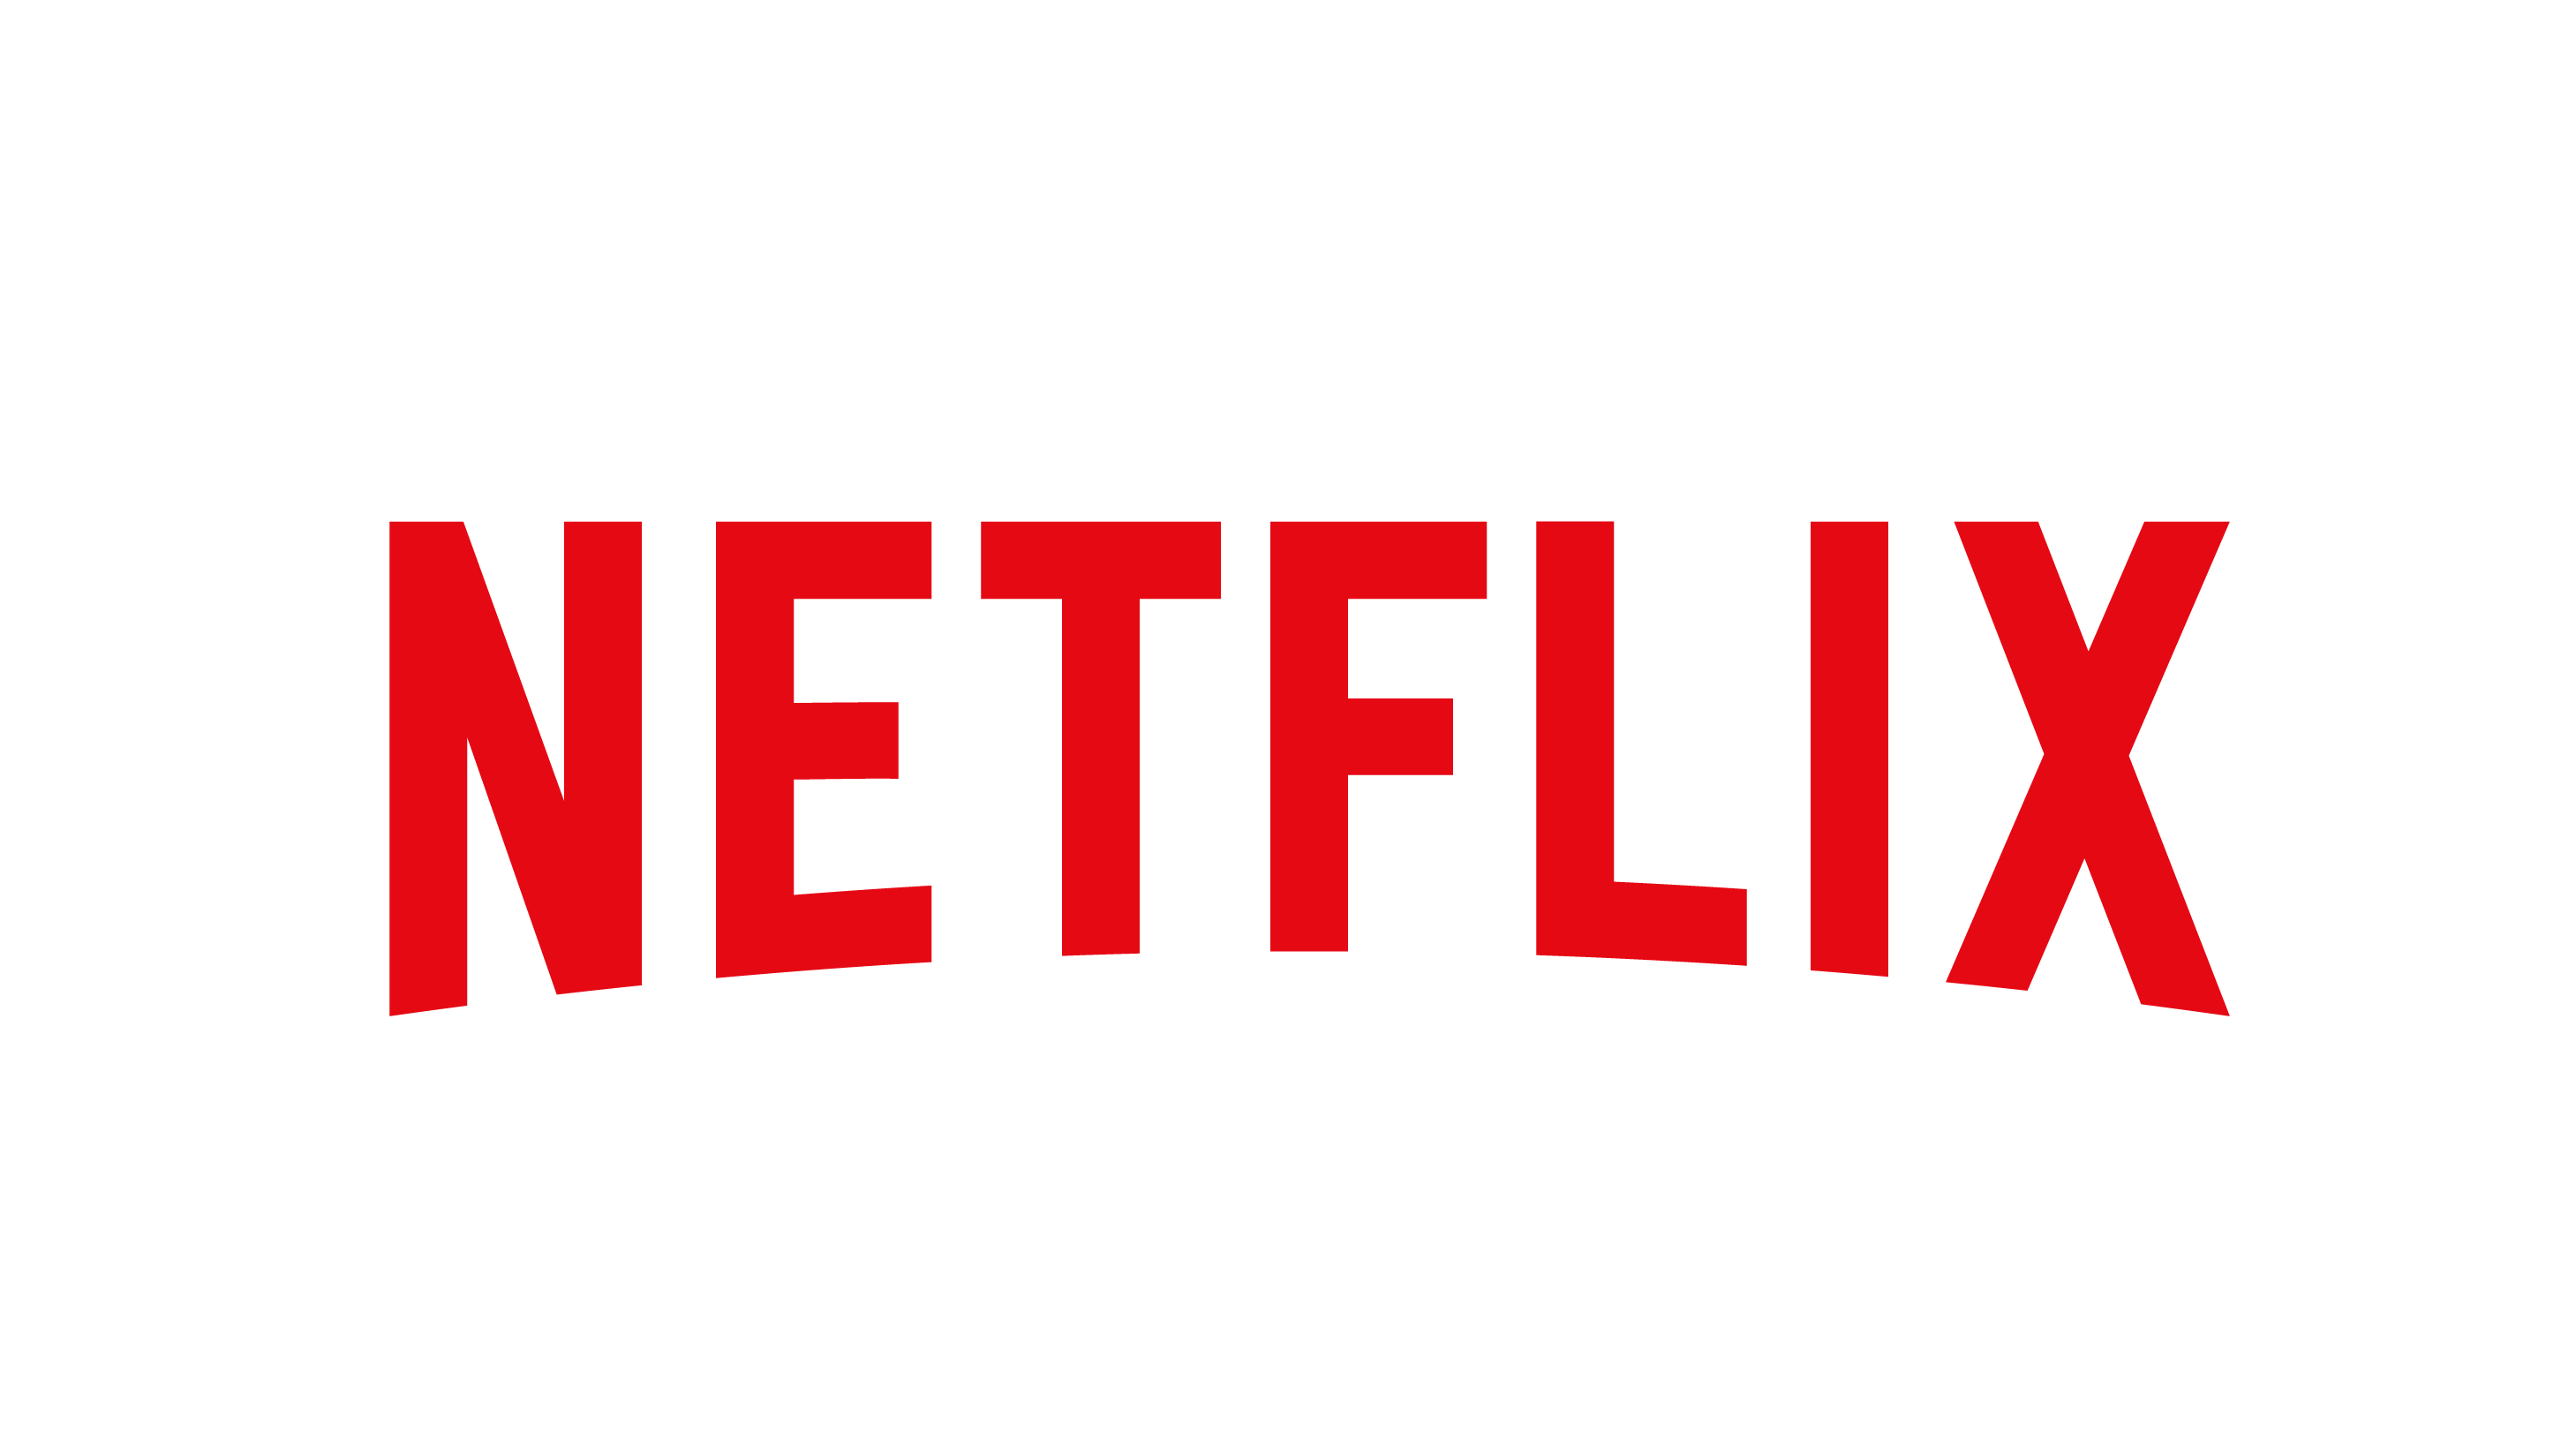 Netflix Logo PNG Image in High Definition pngteam.com